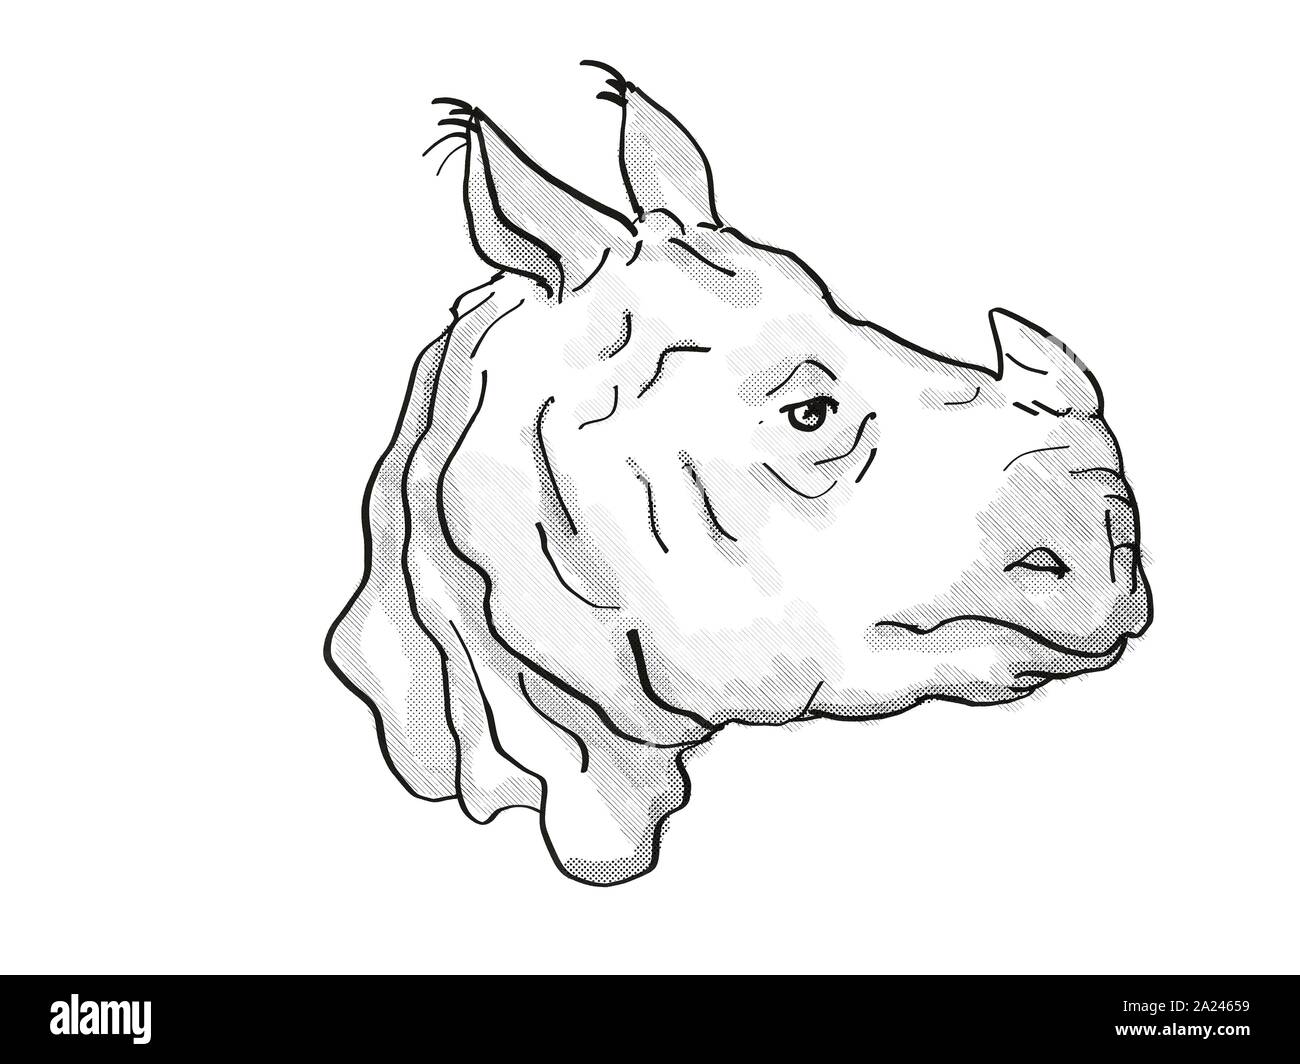 Retro cartoon style dessin de tête d'un rhinocéros indien, une espèce d'espèces isolées sur fond blanc en noir et blanc. Banque D'Images